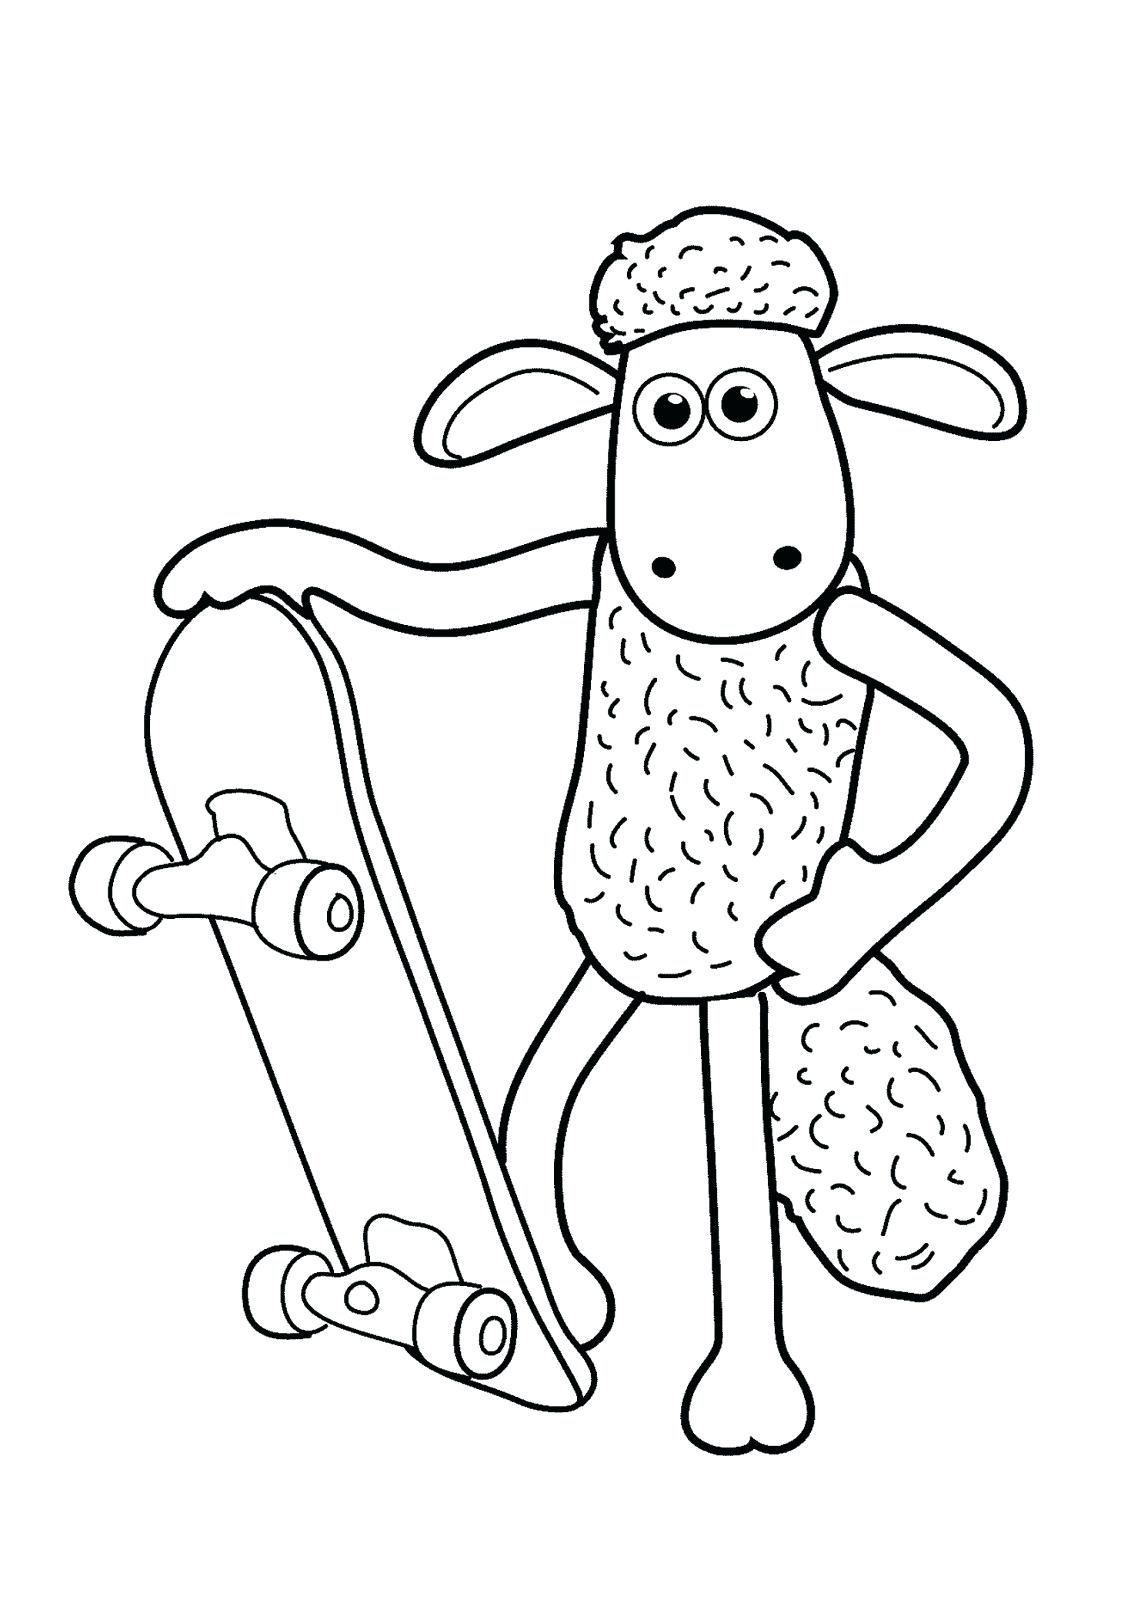 Tranh tô màu con cừu và chiếc ván trượt